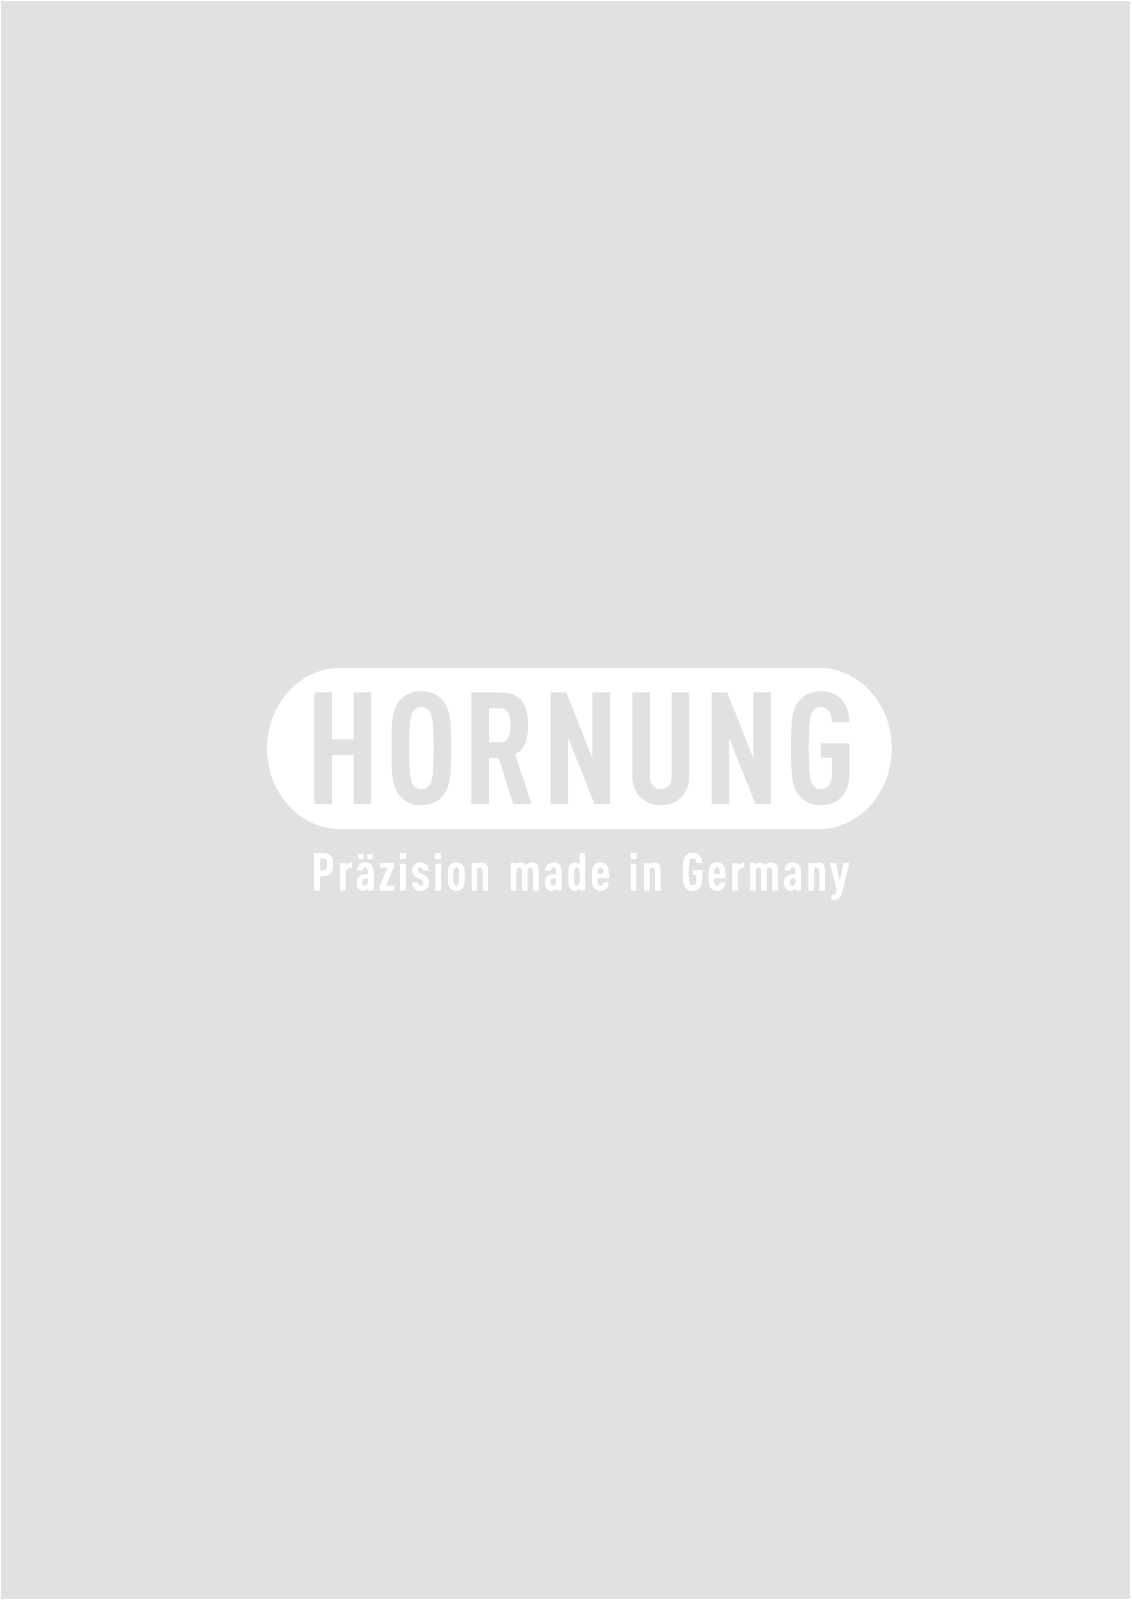 Vorschau Katalog Armaturen für Reinstgase - Hornung GmbH Seite 128